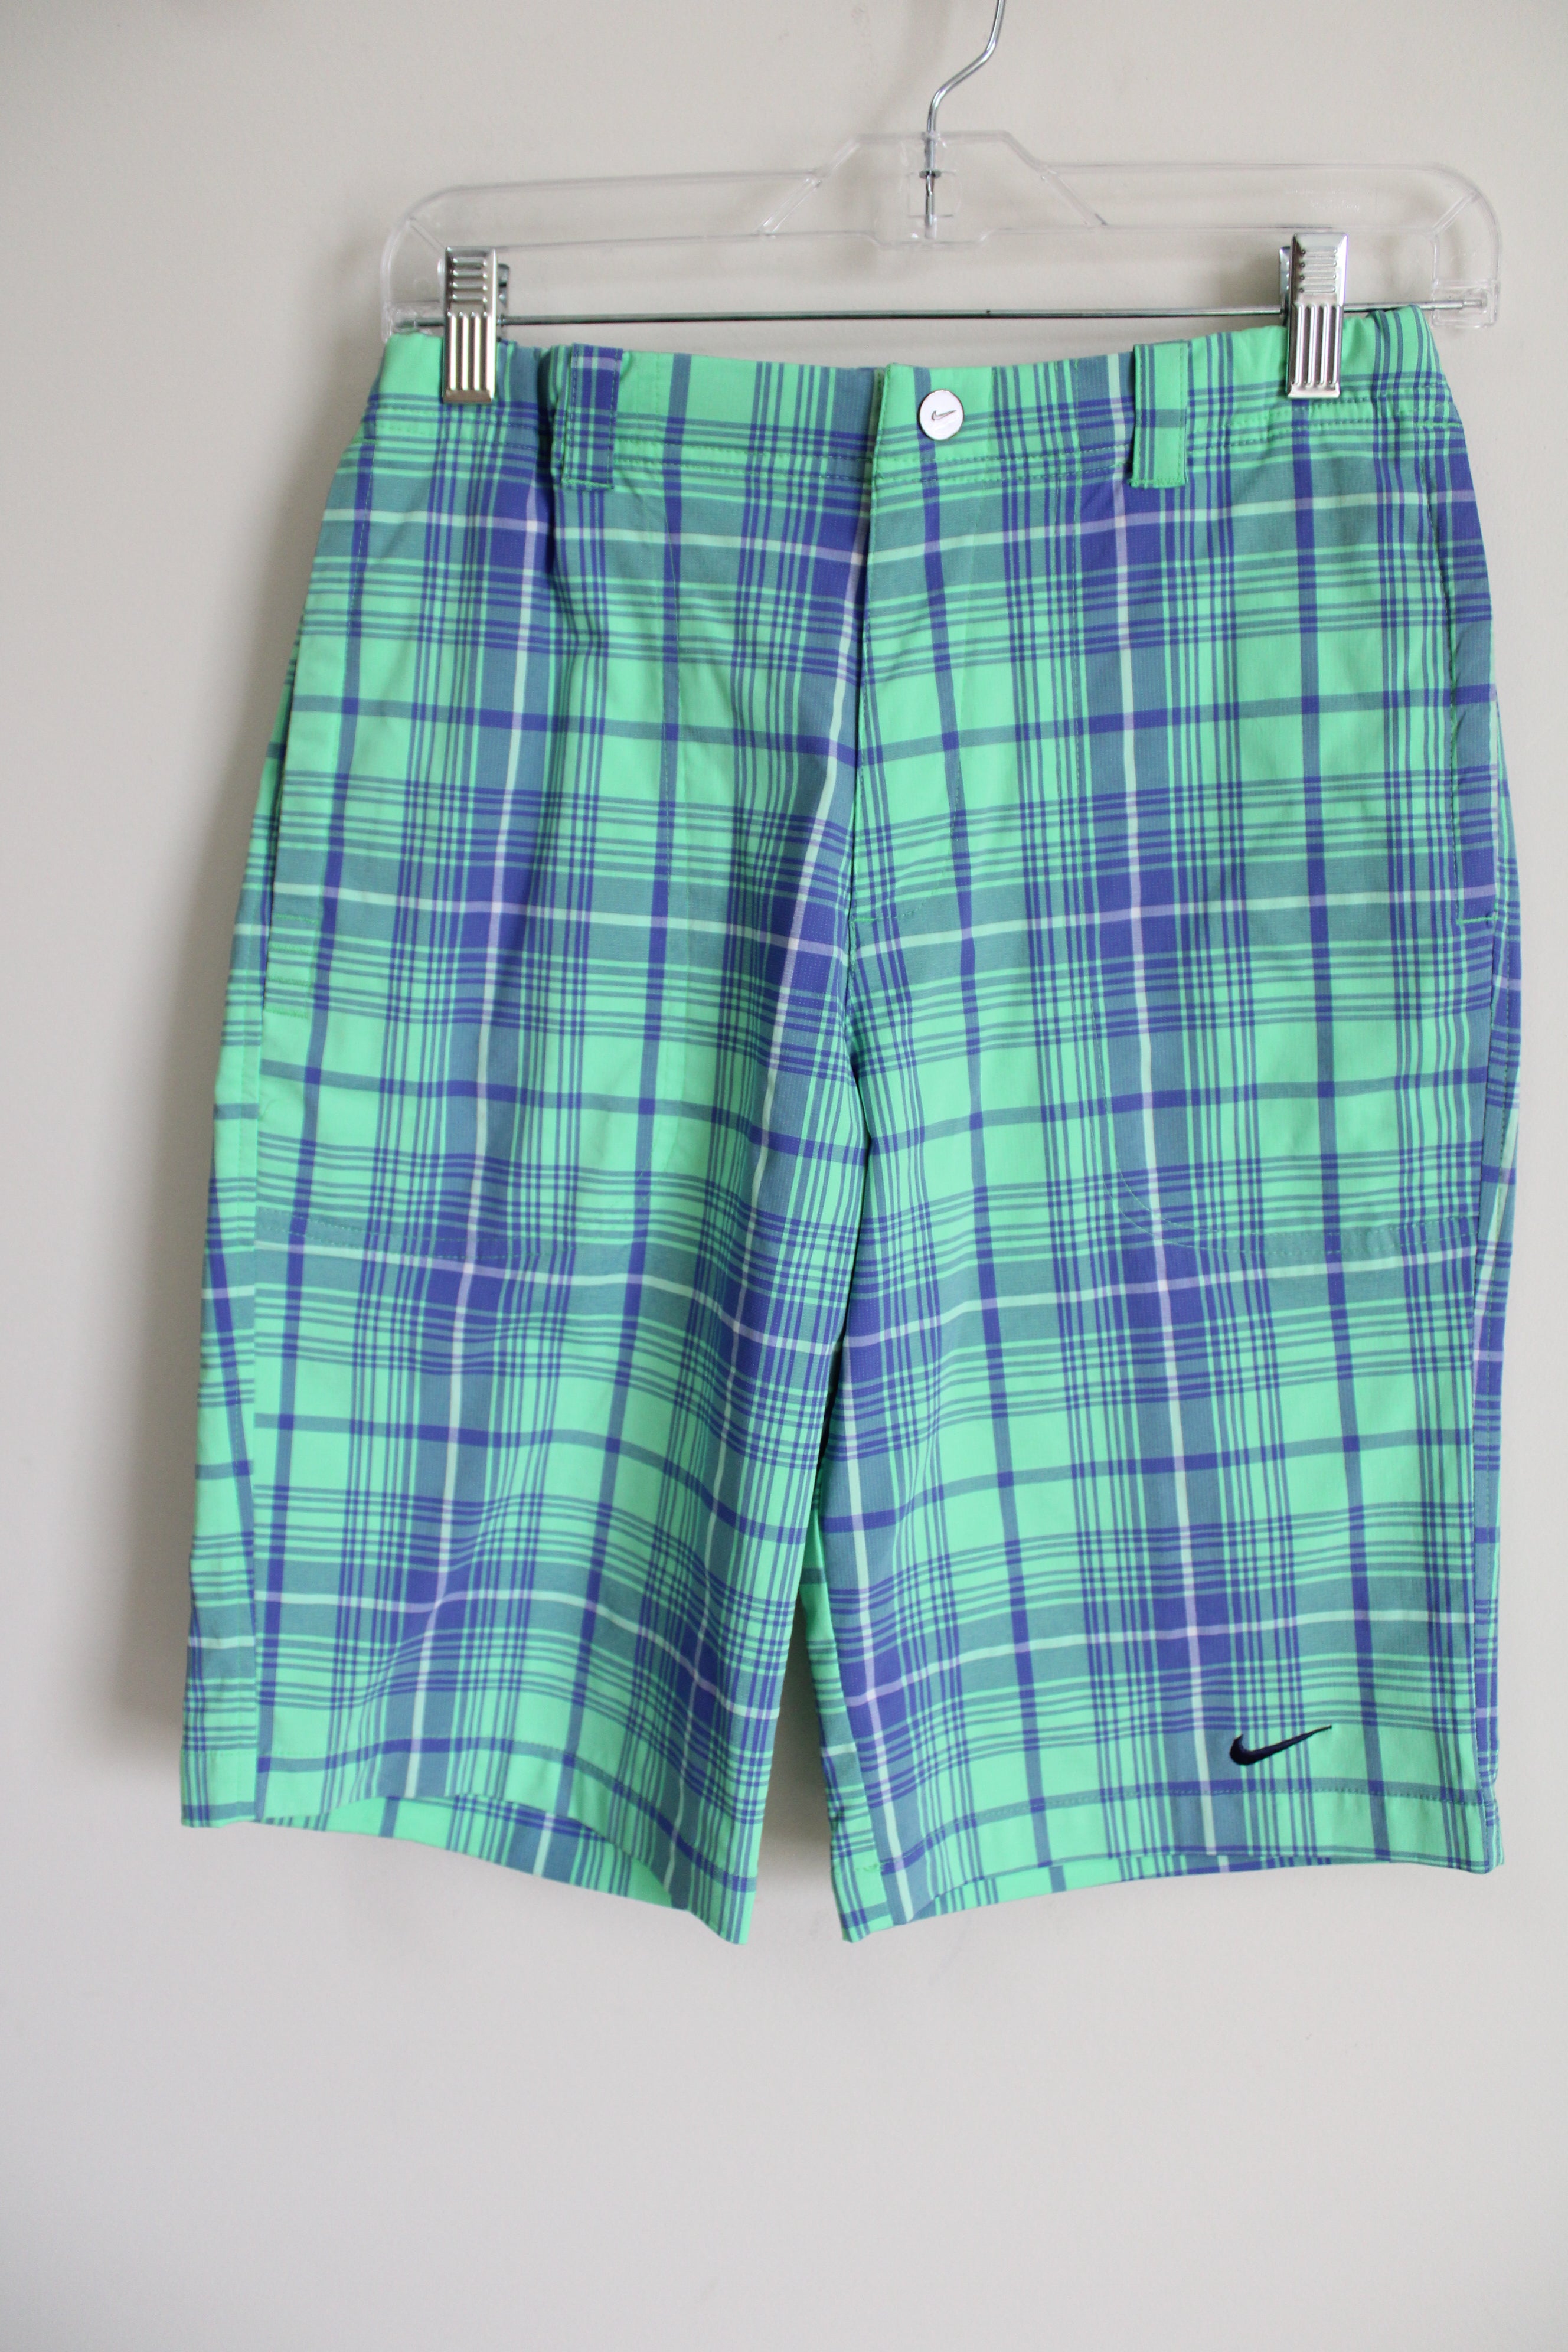 Nike Dri-Fit Green Blue Plaid Shorts | L (14/16)